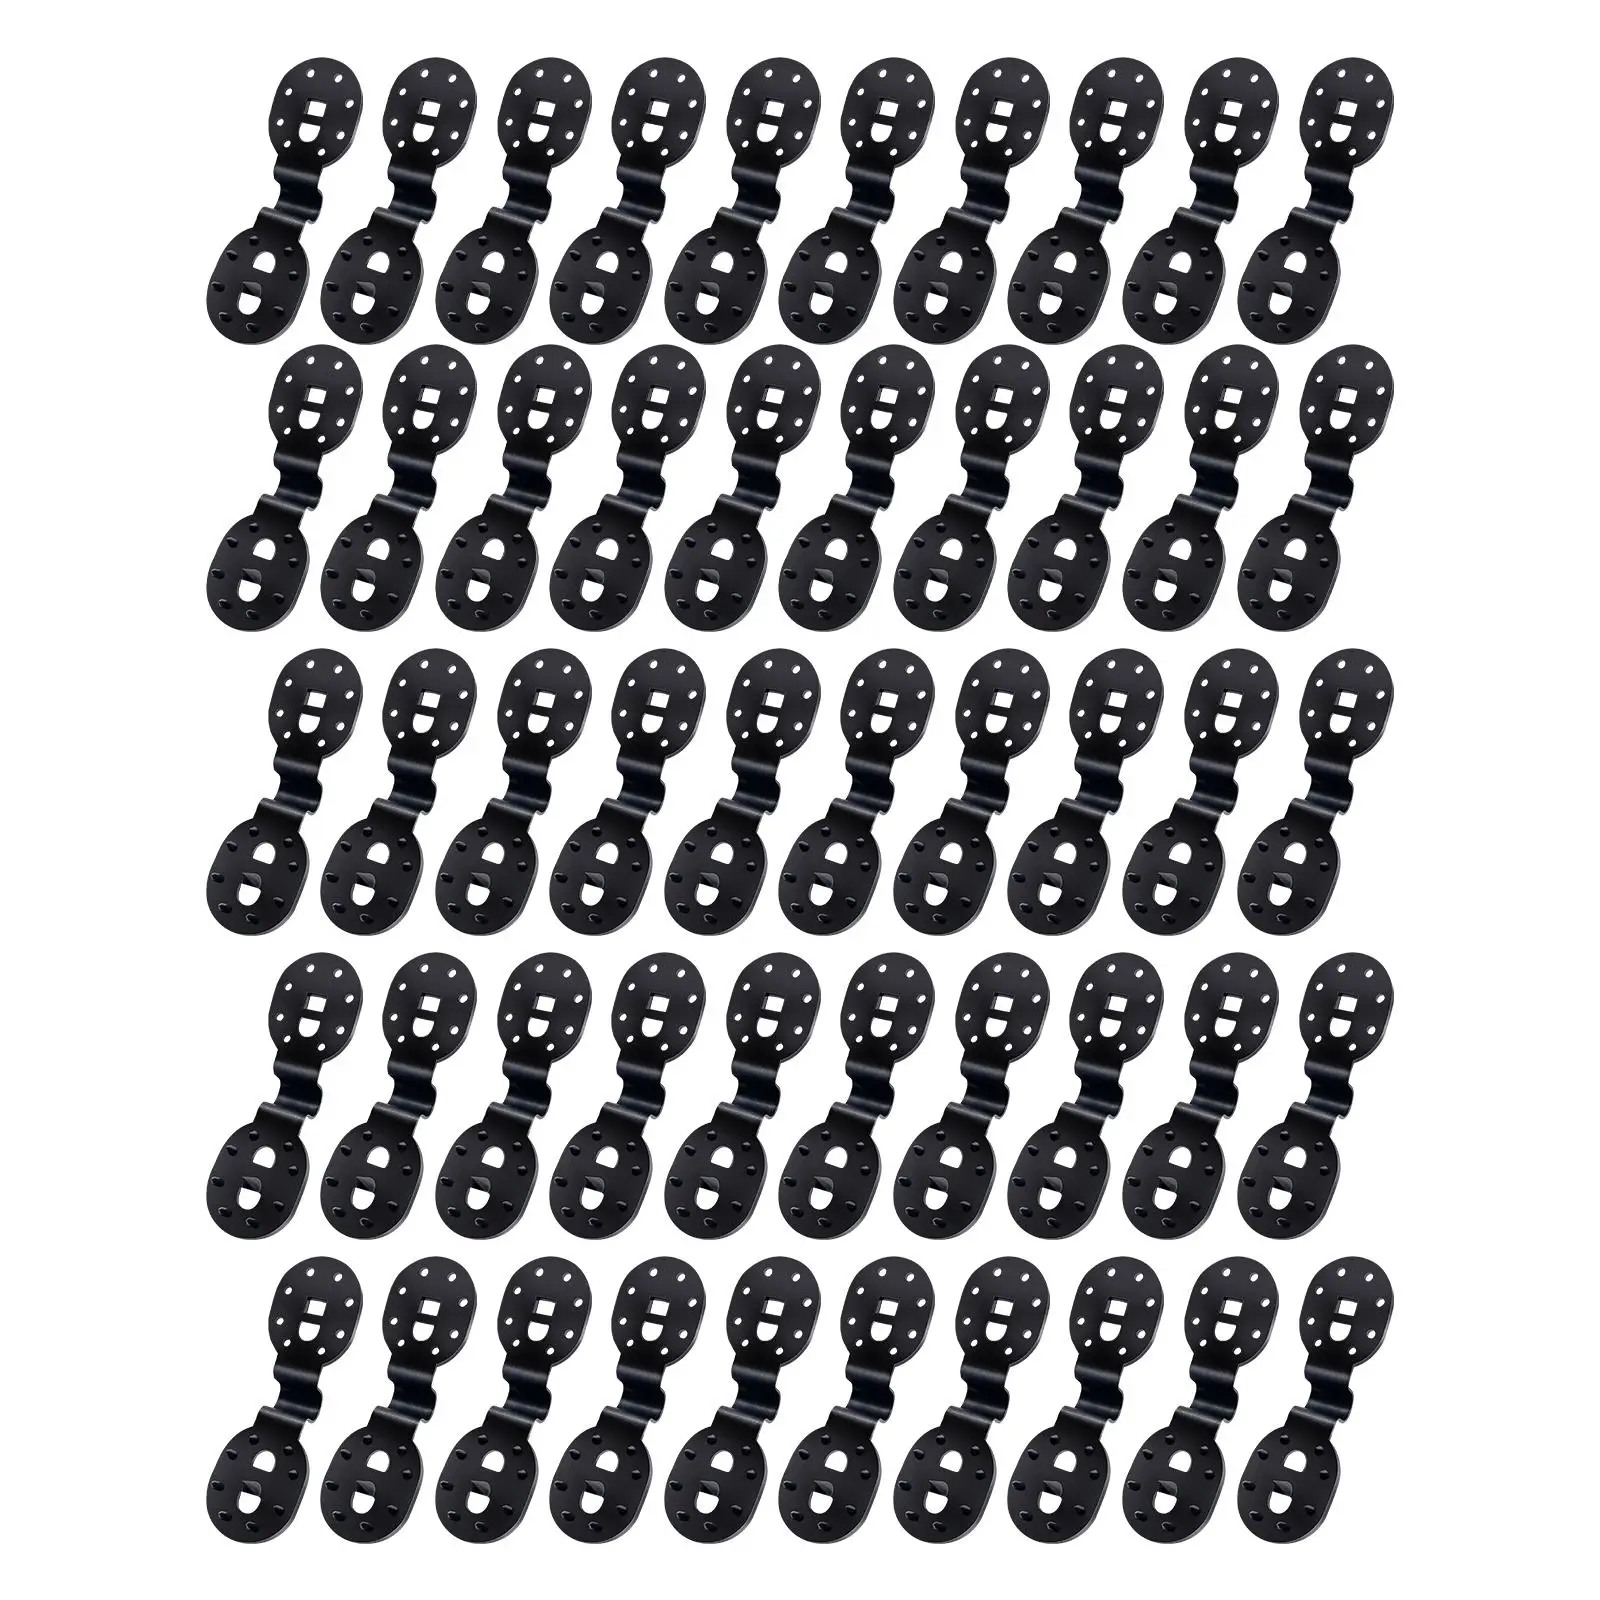 50x Зажимы Для Ткани Для Затенения Инструменты Для Затенения Наружных Многоразовых Аксессуаров Для Ткани Для Затенения Сверхмощные Зажимы Для Сетки Для Затенения Фиксированные Зажимы Изображение 4 